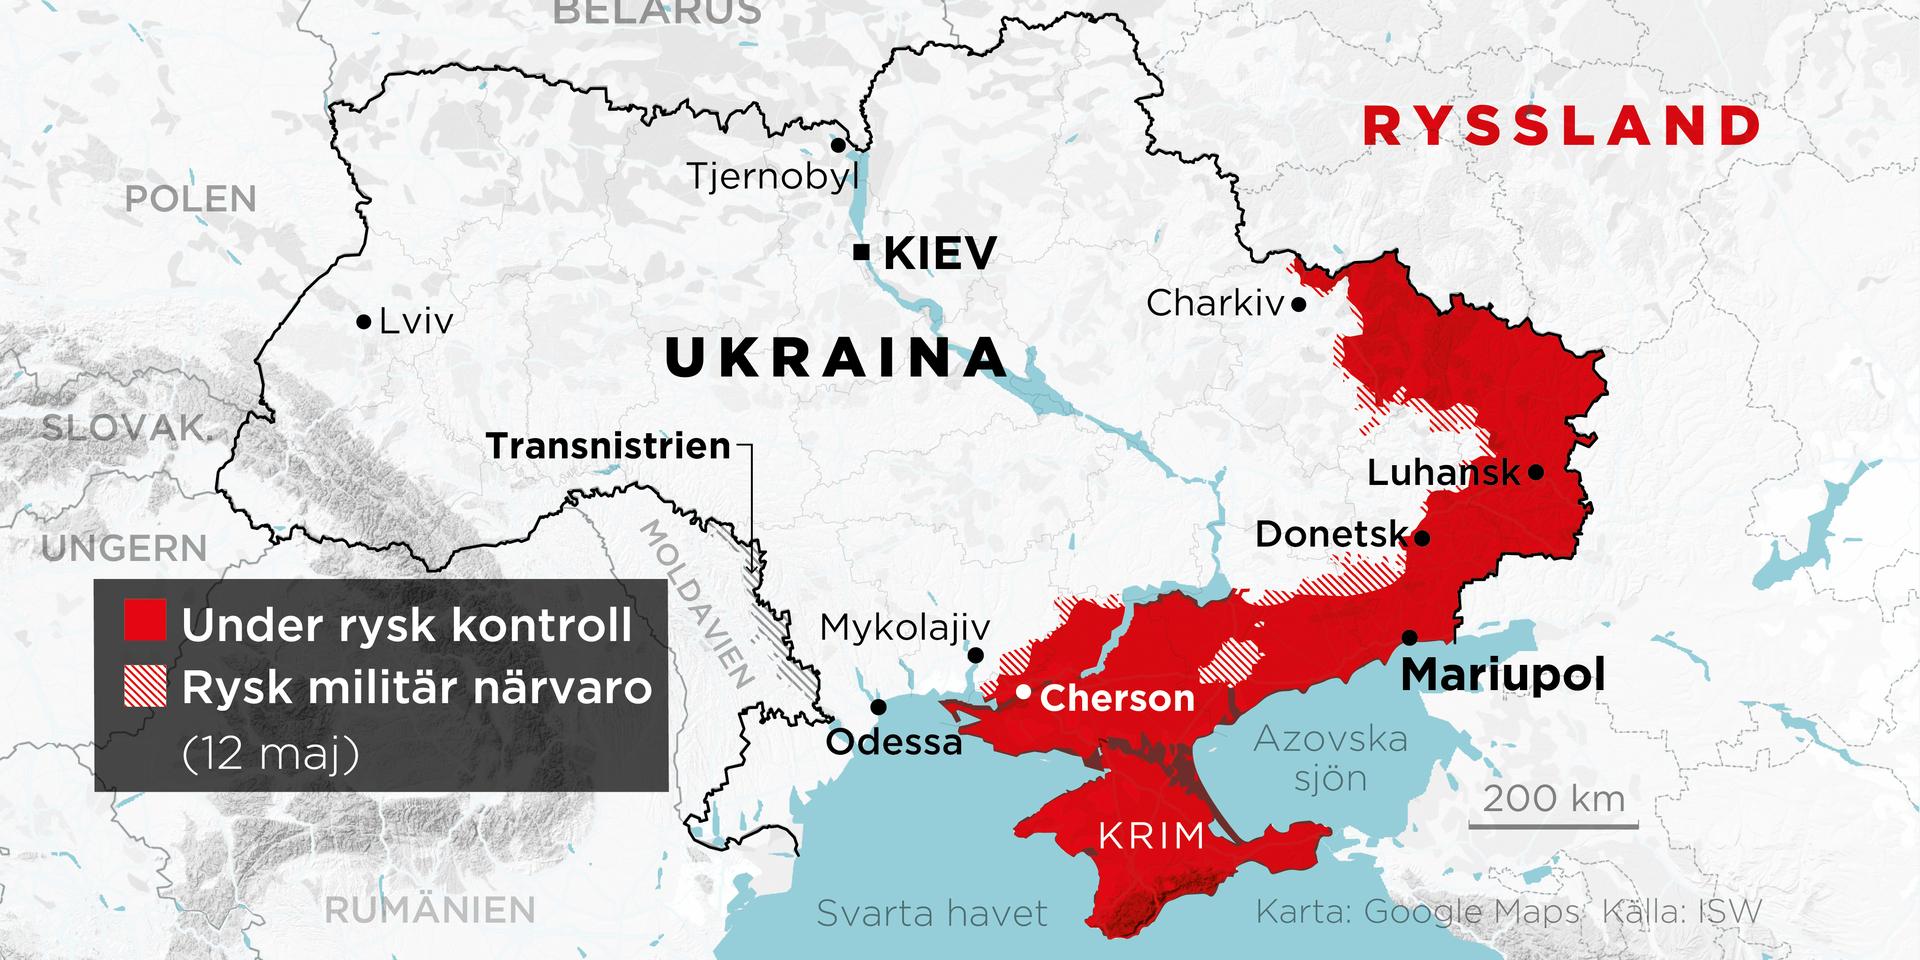 Områden under rysk kontroll samt områden med rysk militär närvaro 12 maj.